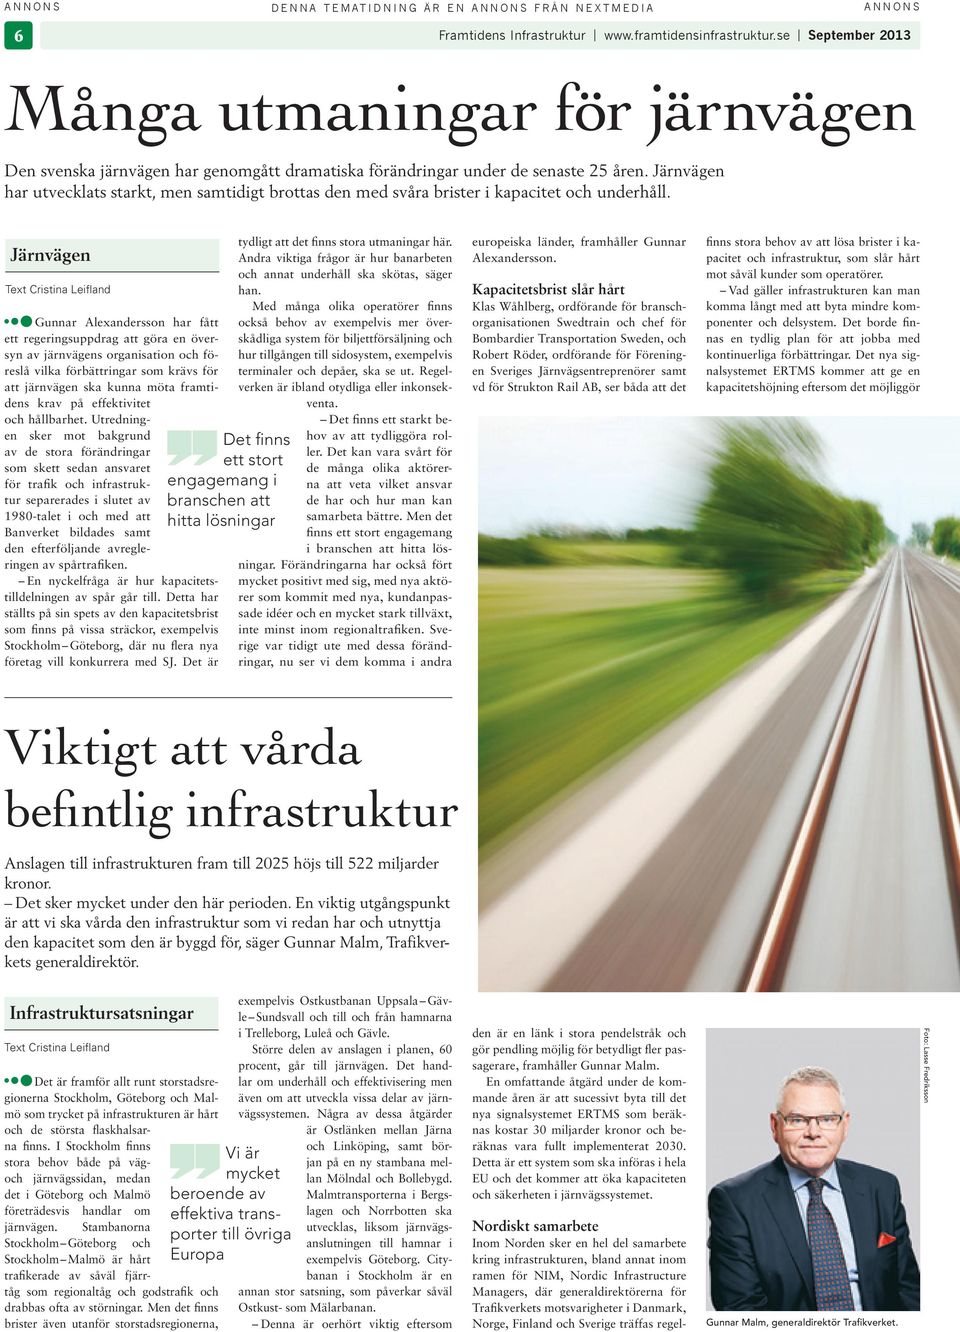 Järnvägen Text Crstna Lefland Gunnar Alexandersson har fått ett regerngsuppdrag att göra en översyn av järnvägens organsaton och föreslå vlka förbättrngar som krävs för att järnvägen ska kunna möta